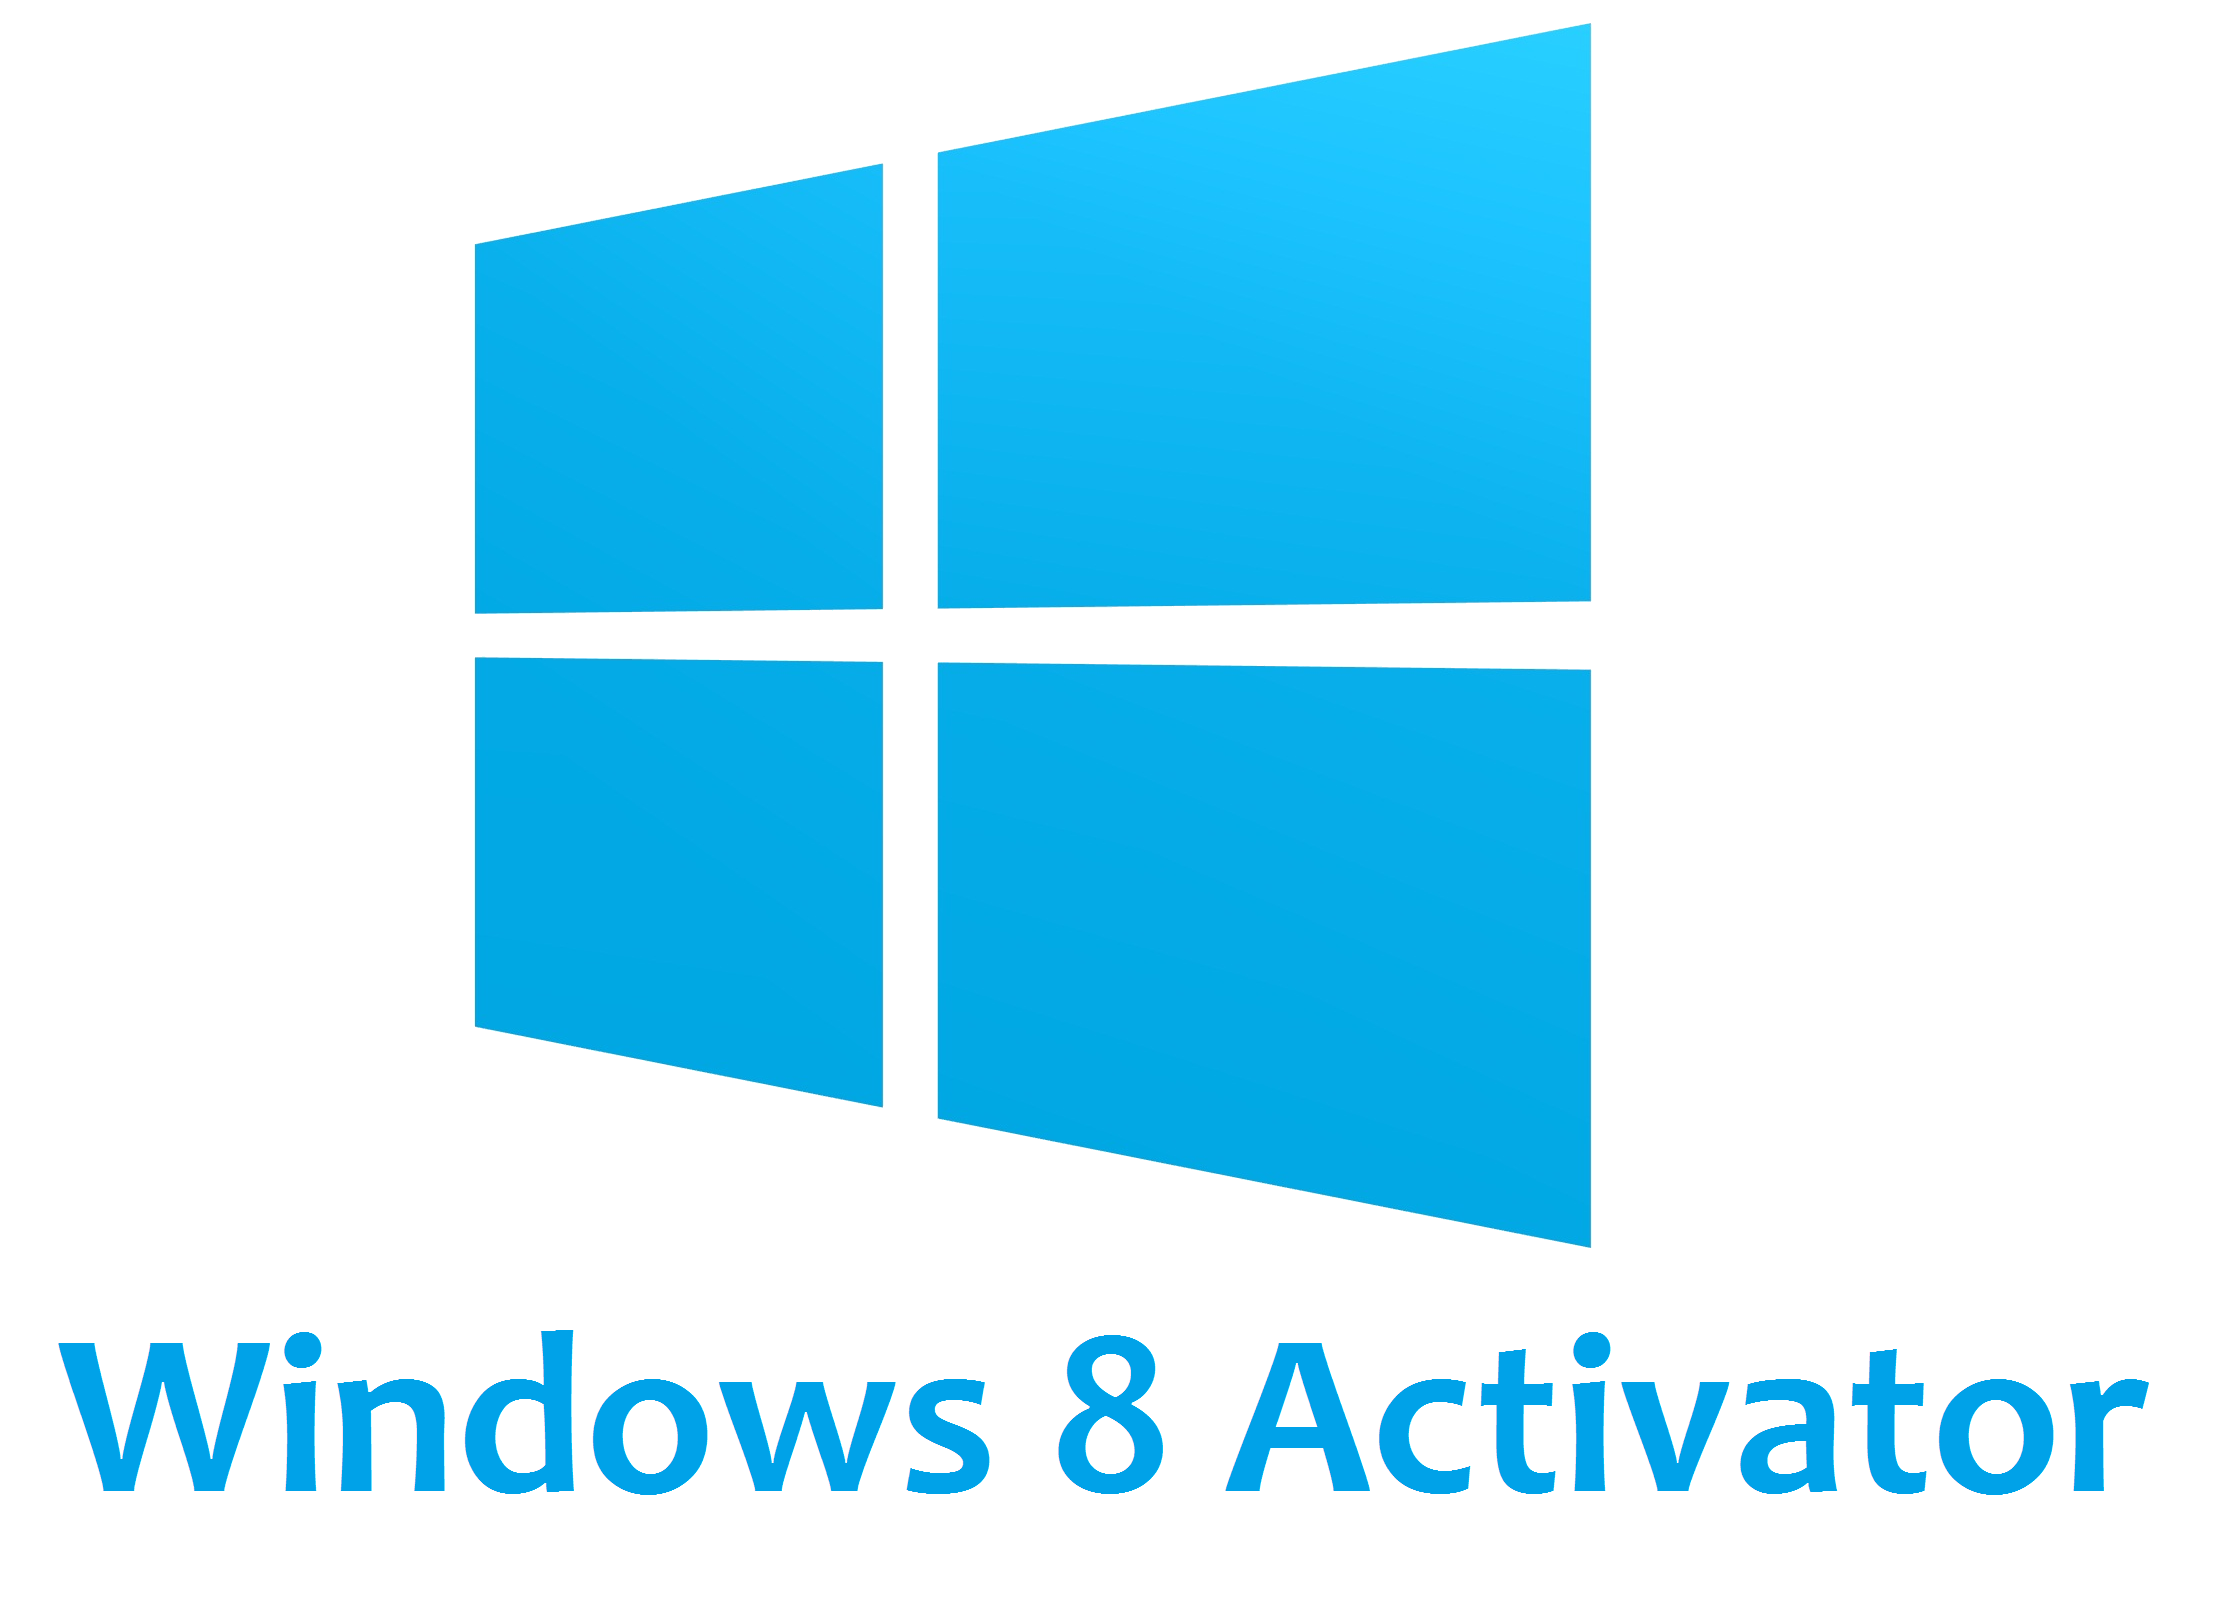 Kmspico activator windows 8 download